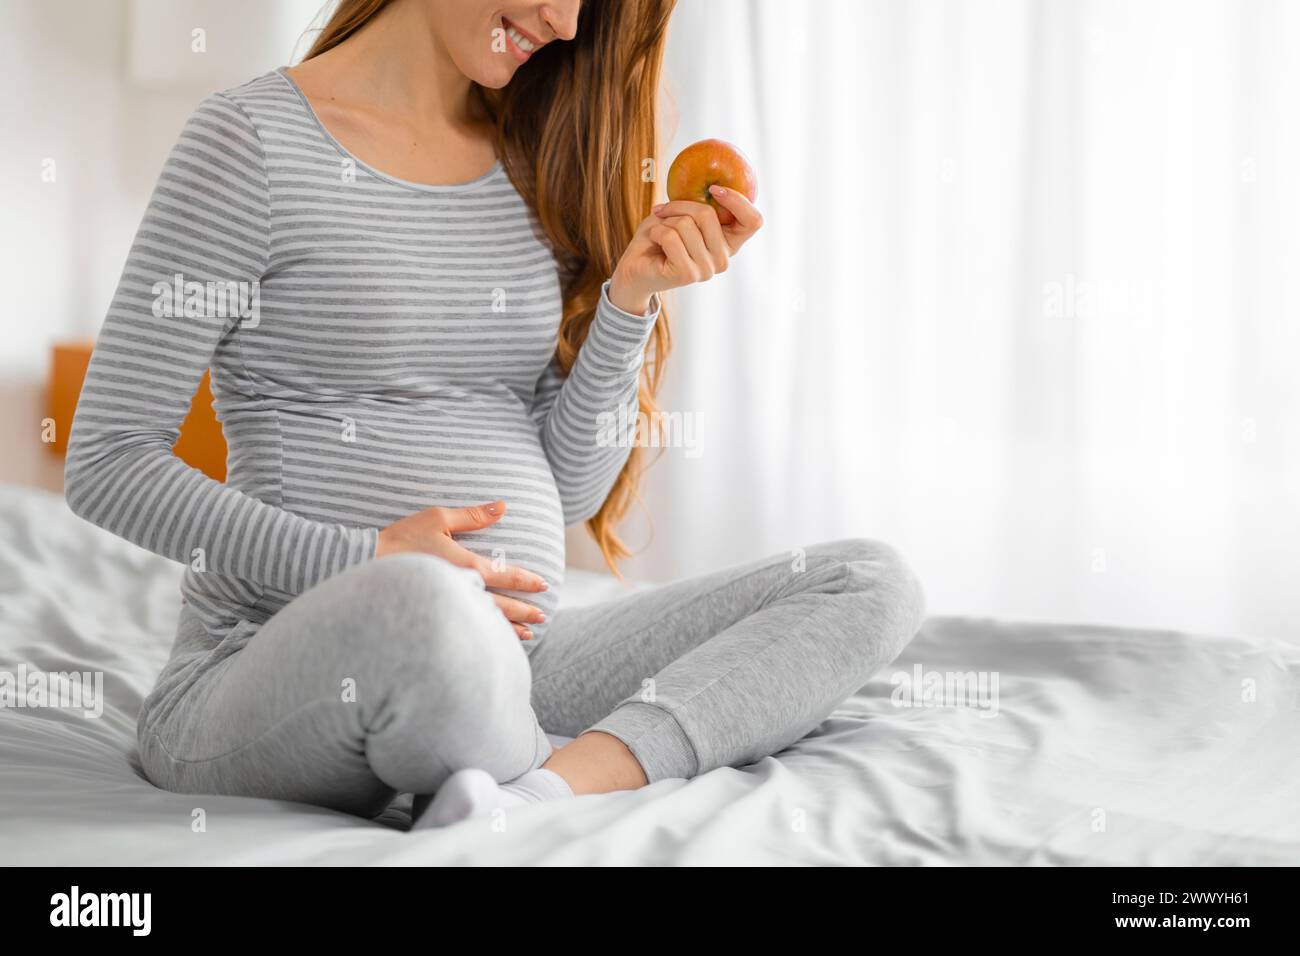 Femme enceinte contemplant une pomme dans sa main Banque D'Images